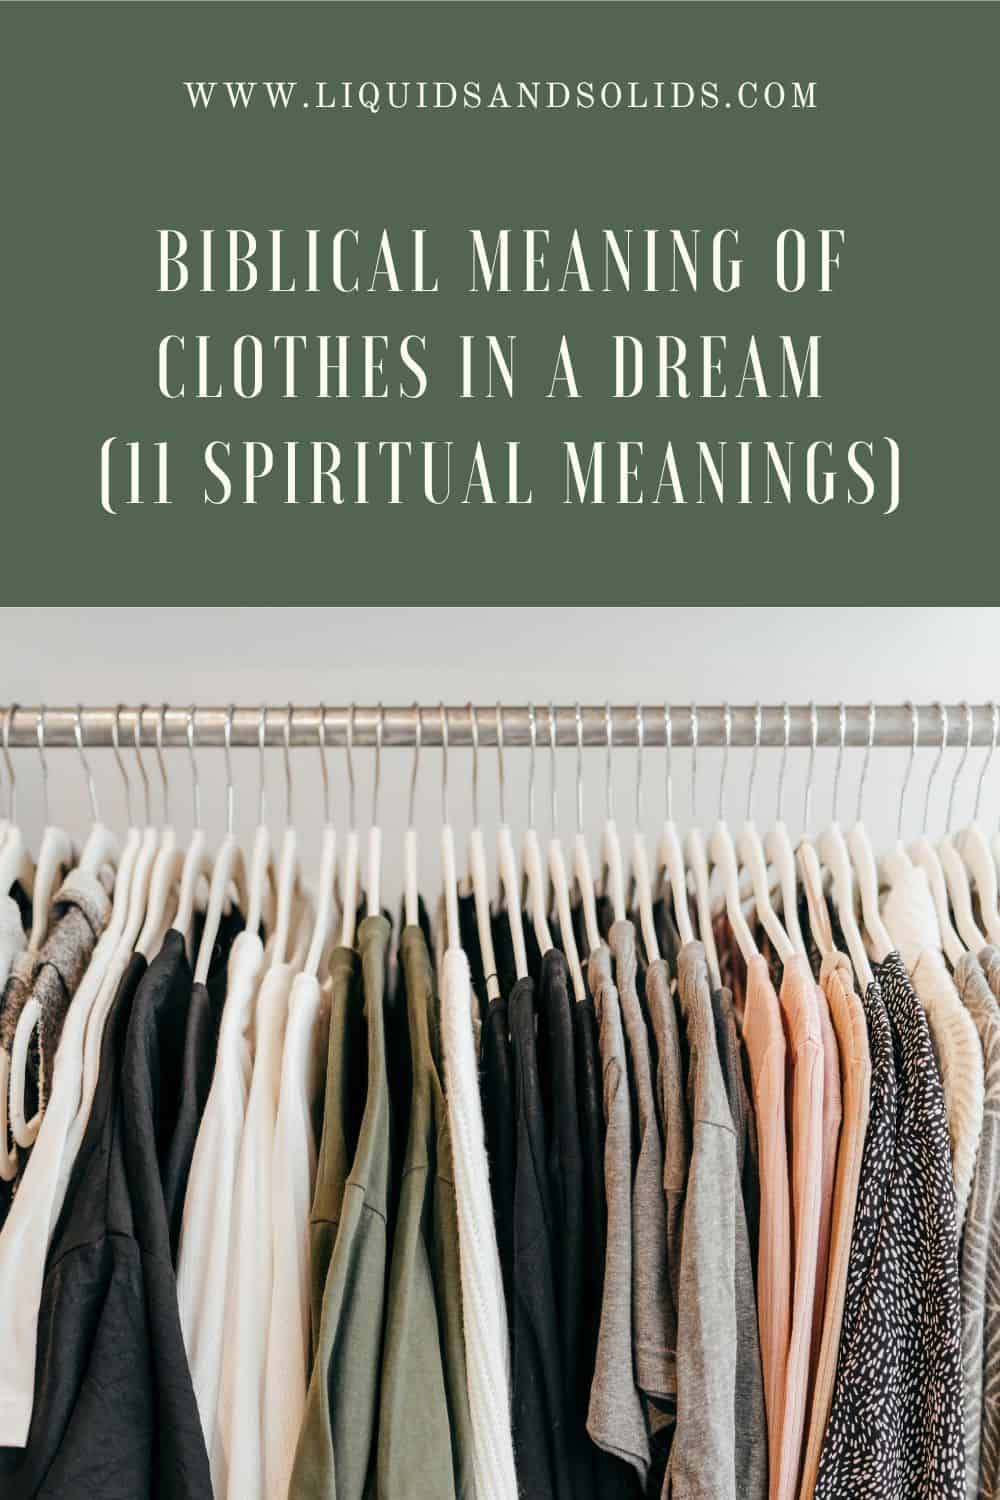  Signification biblique des vêtements dans un rêve (11 significations spirituelles)